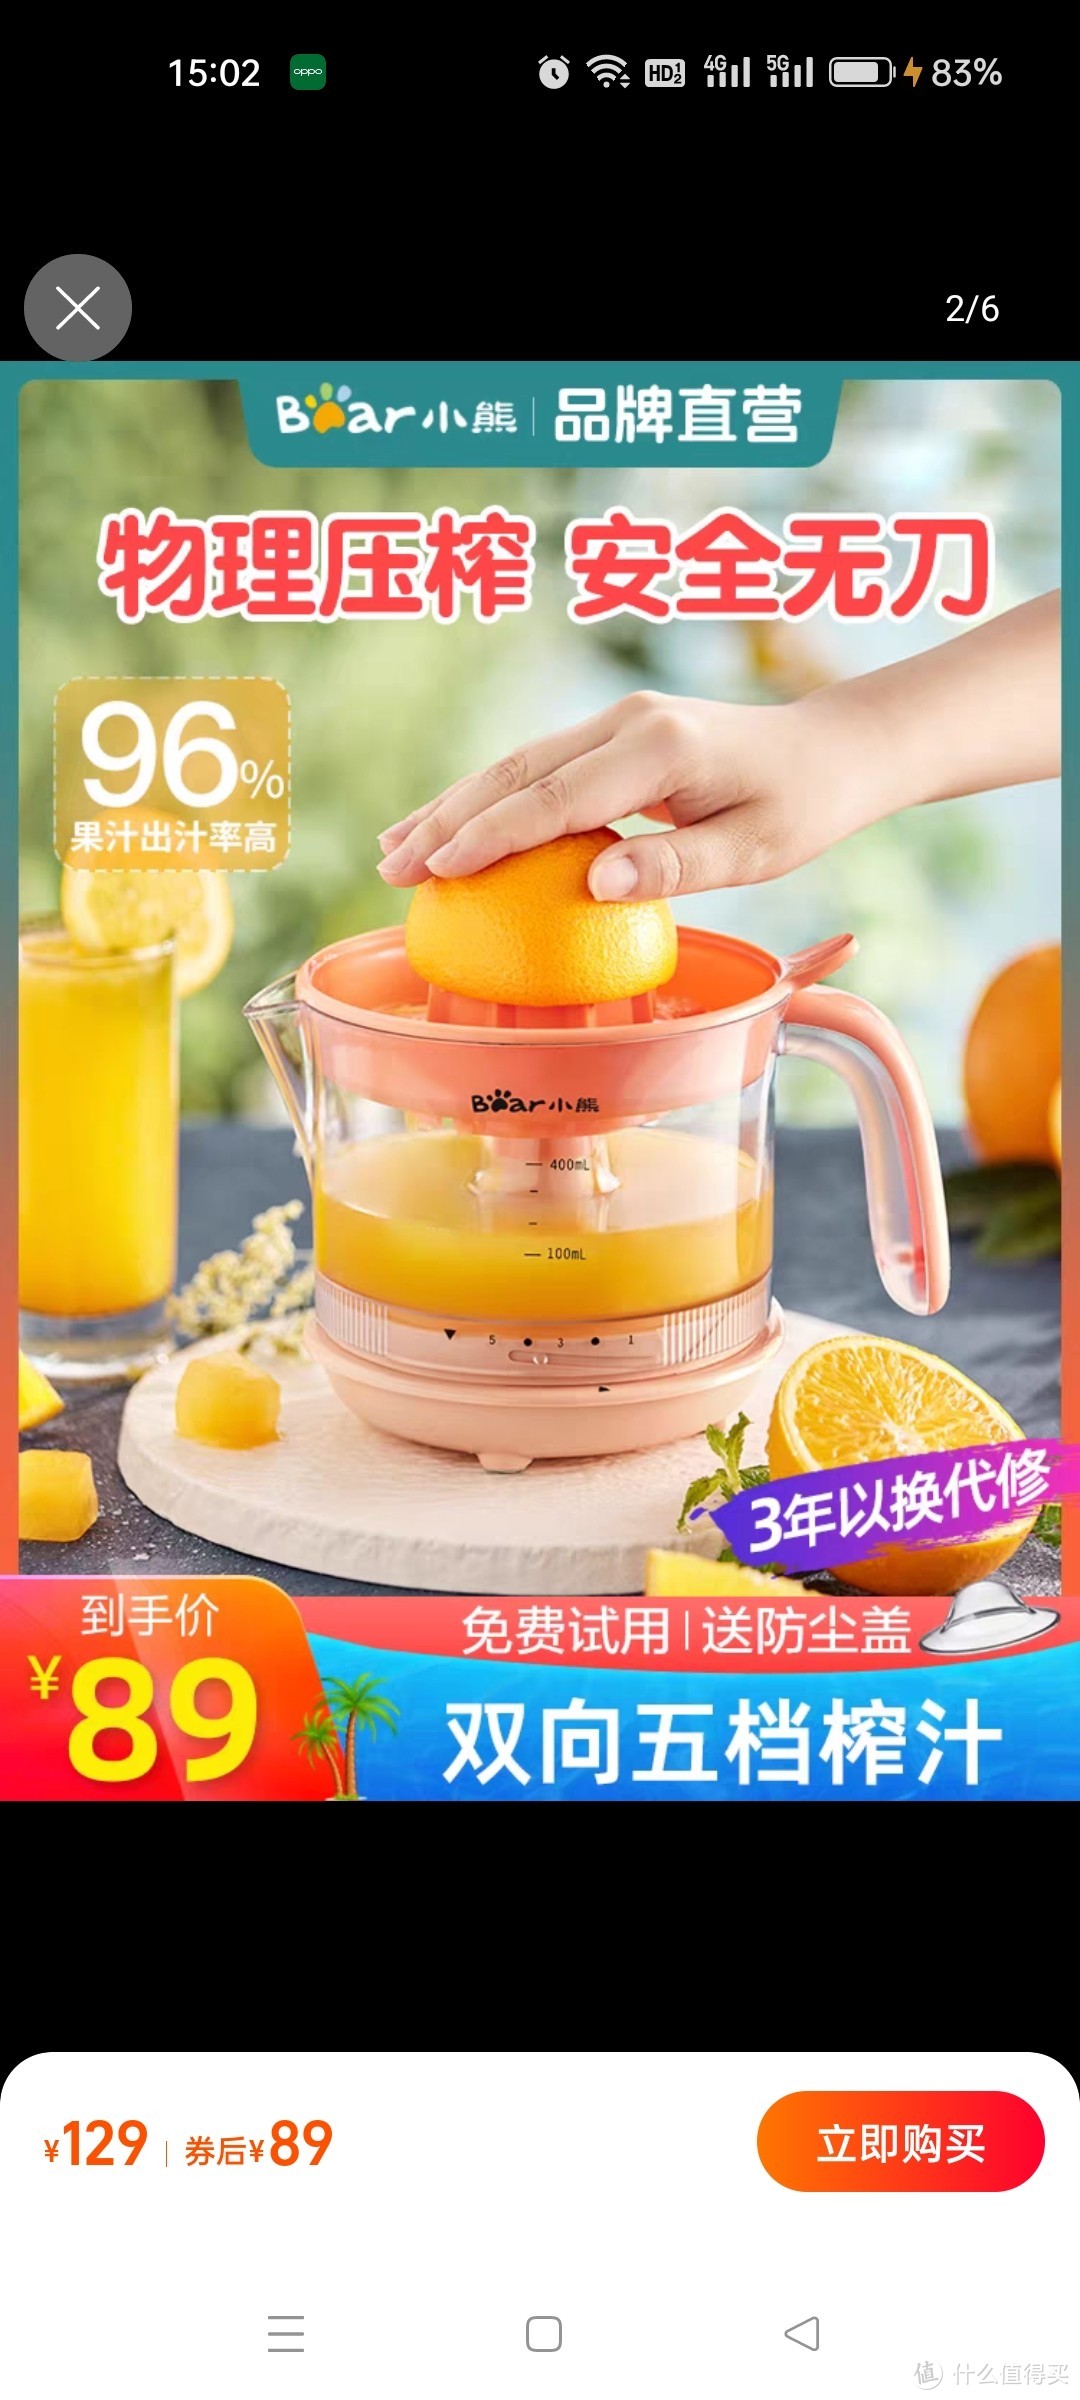 小熊电动榨橙汁机小型家用全自动榨汁机炸果汁橙子压榨器渣汁分离